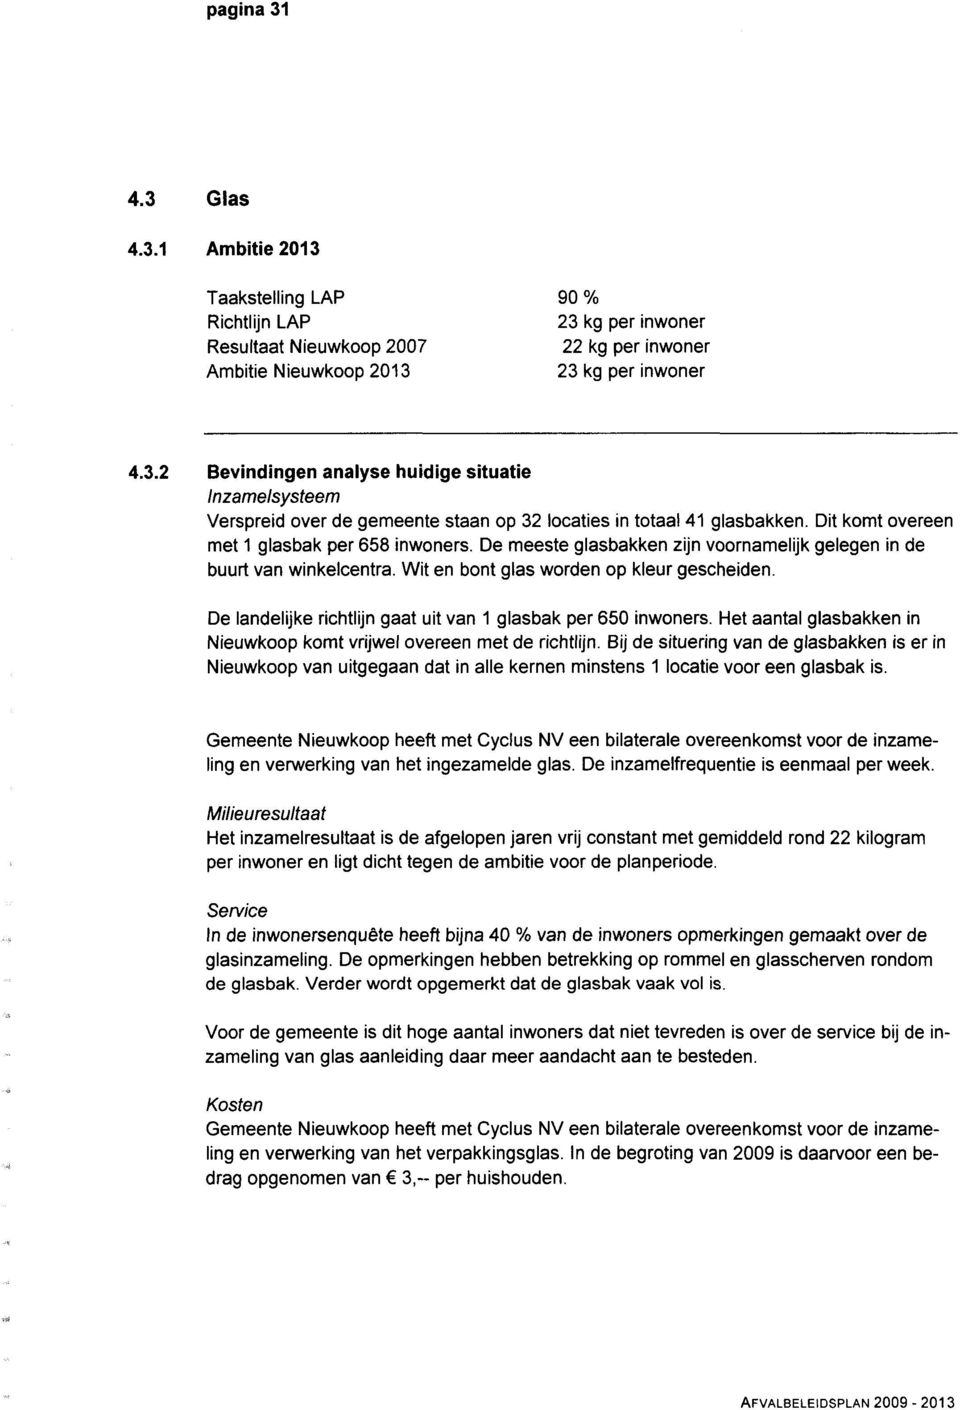 De landelijke richtlijn gaat uit van 1 glasbak per 65 inwoners. Het aantal glasbakken in Nieuwkoop komt vrijwel overeen met de richtlijn.